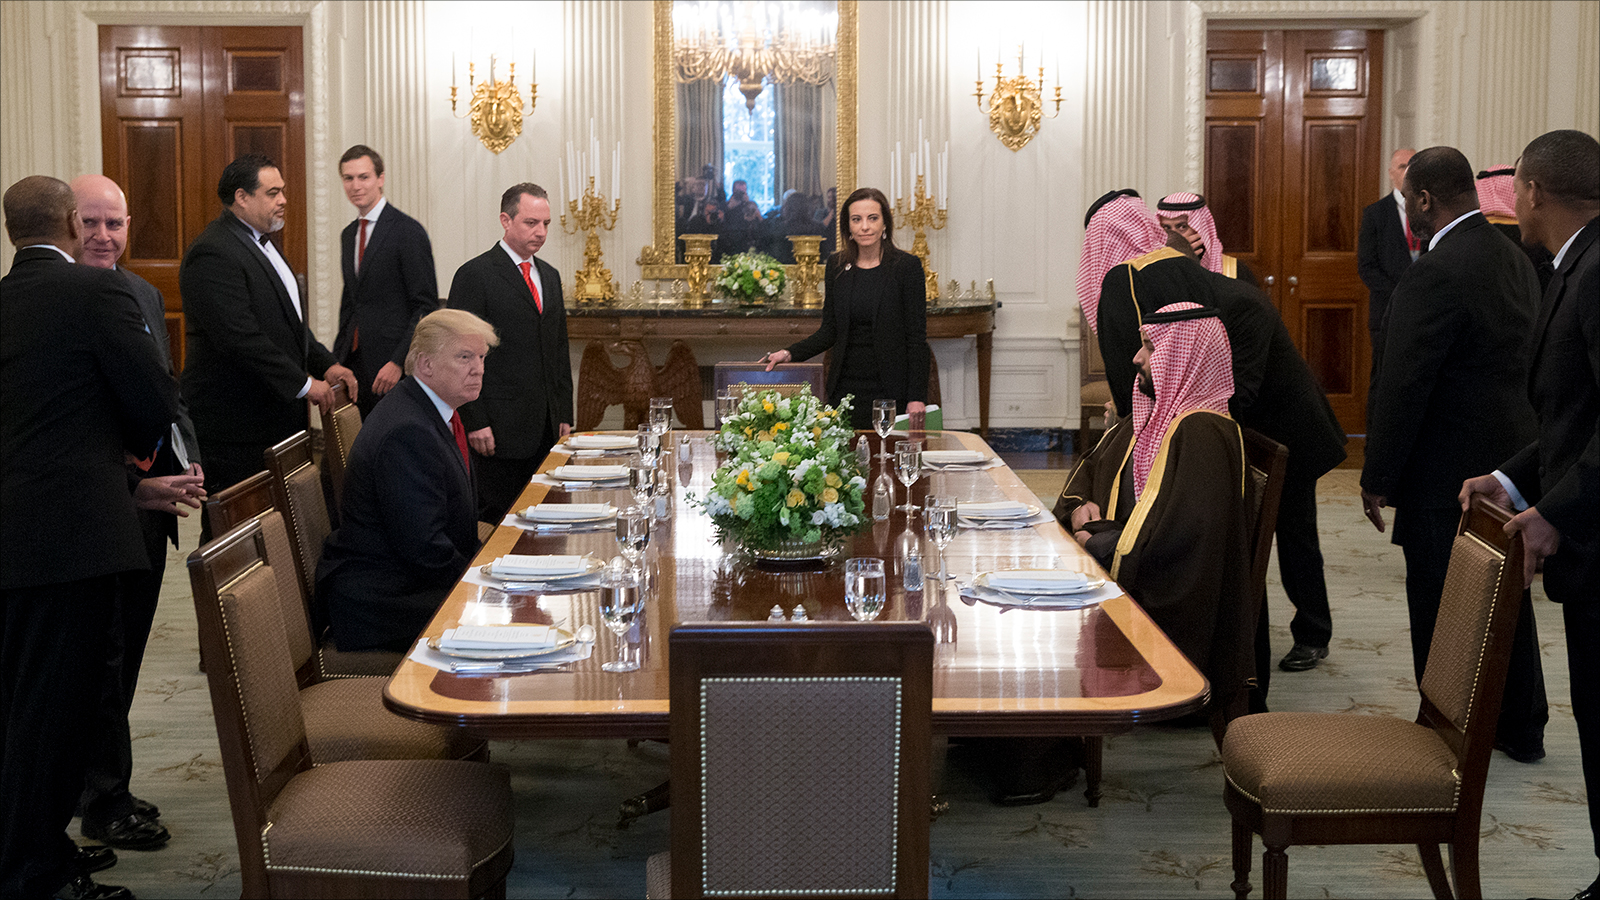  ولي العهد السعودي أثناء مأدبة عشاء مع الرئيس الأميركي دونالد ترامب بواشنطن (الأوروبية)